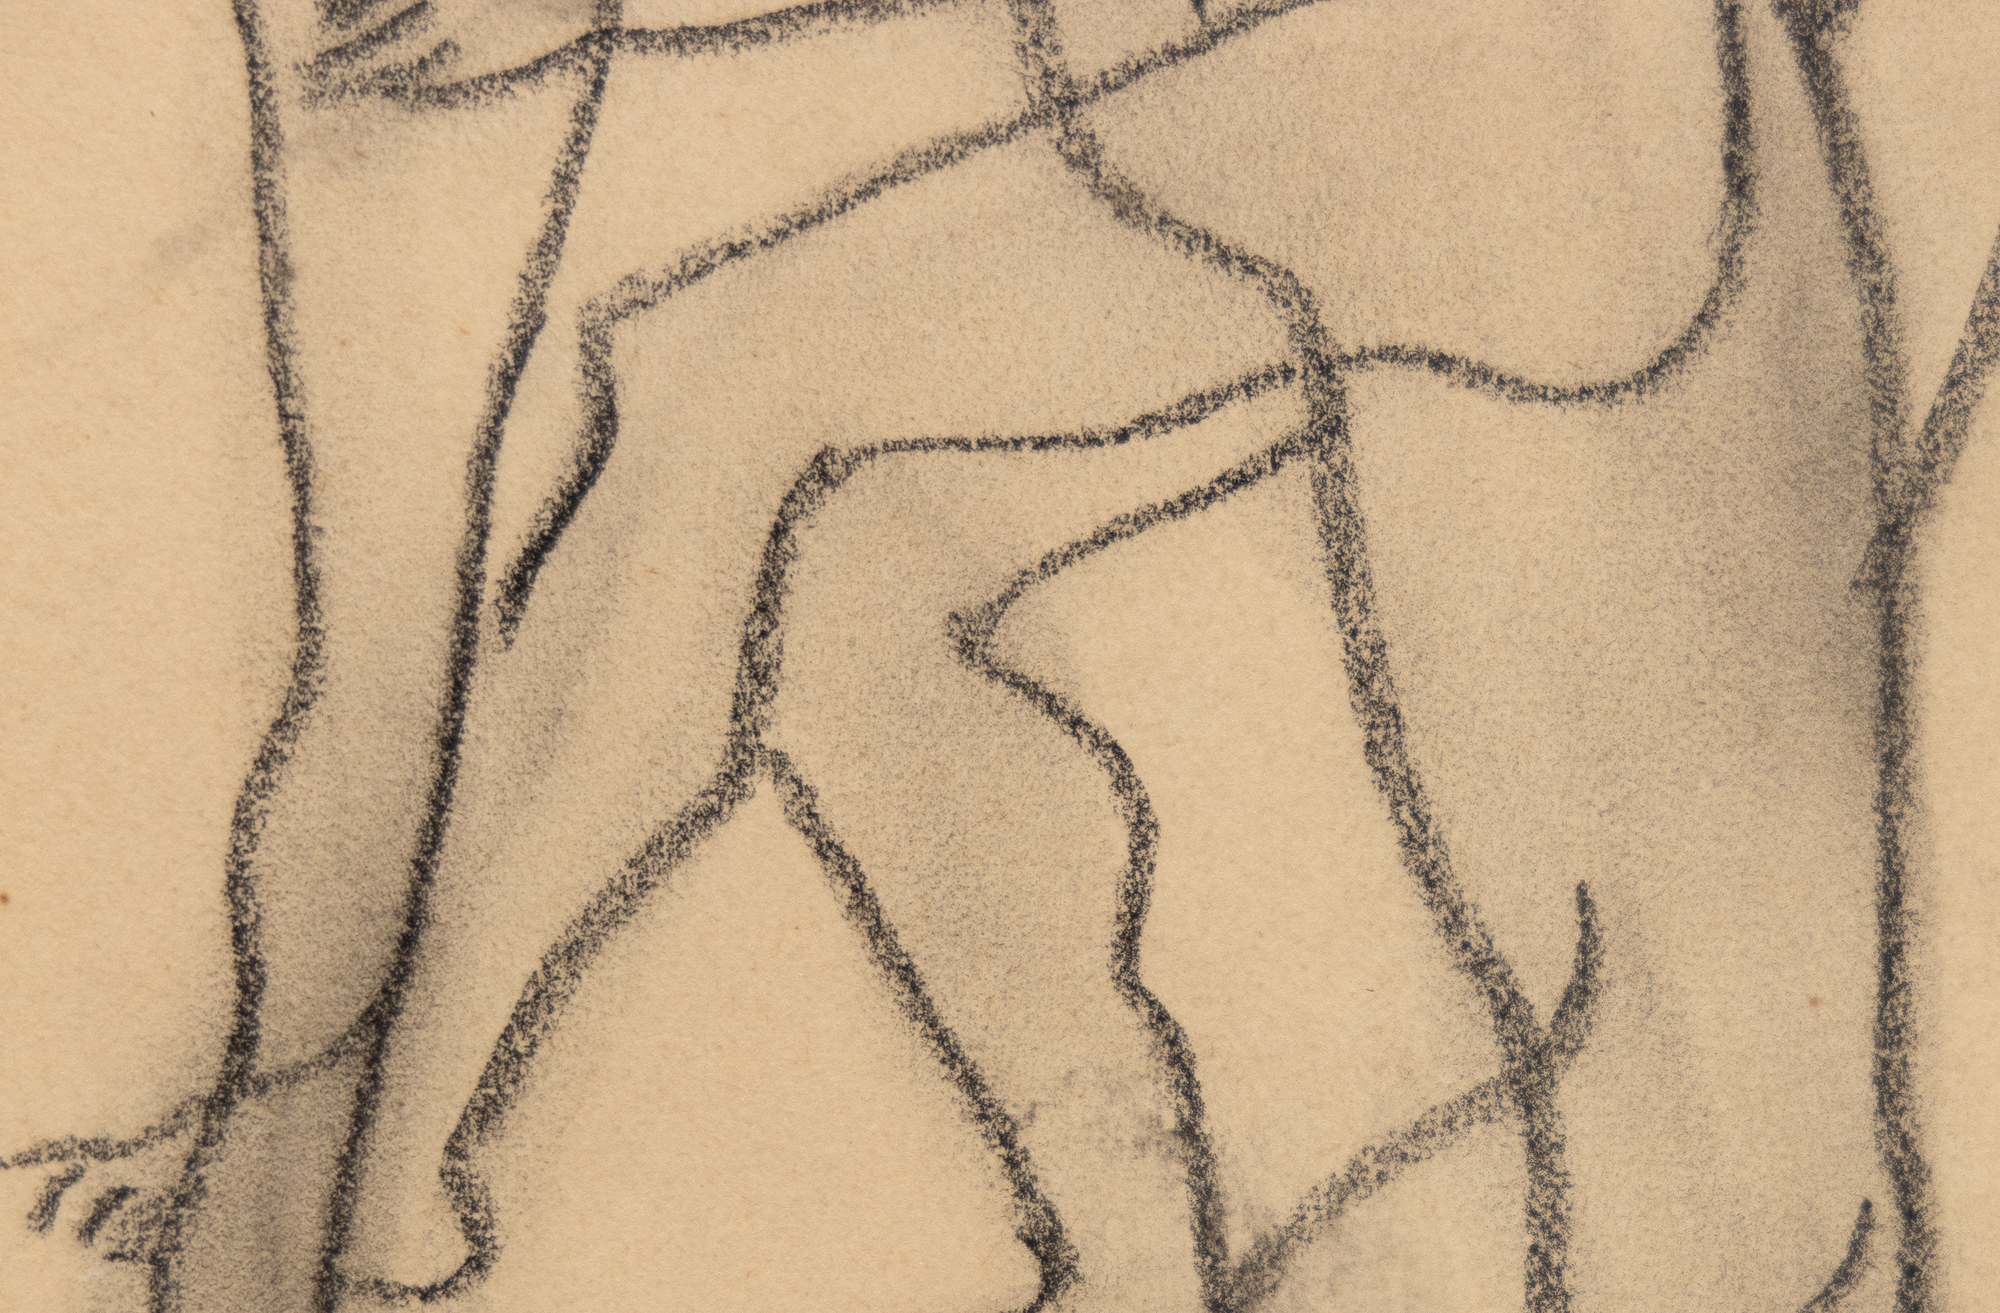 FRANCIS PICABIA - Trois personnages nus - crayon de couleur noir sur papier chamois - 11 1/2 x 8 in.